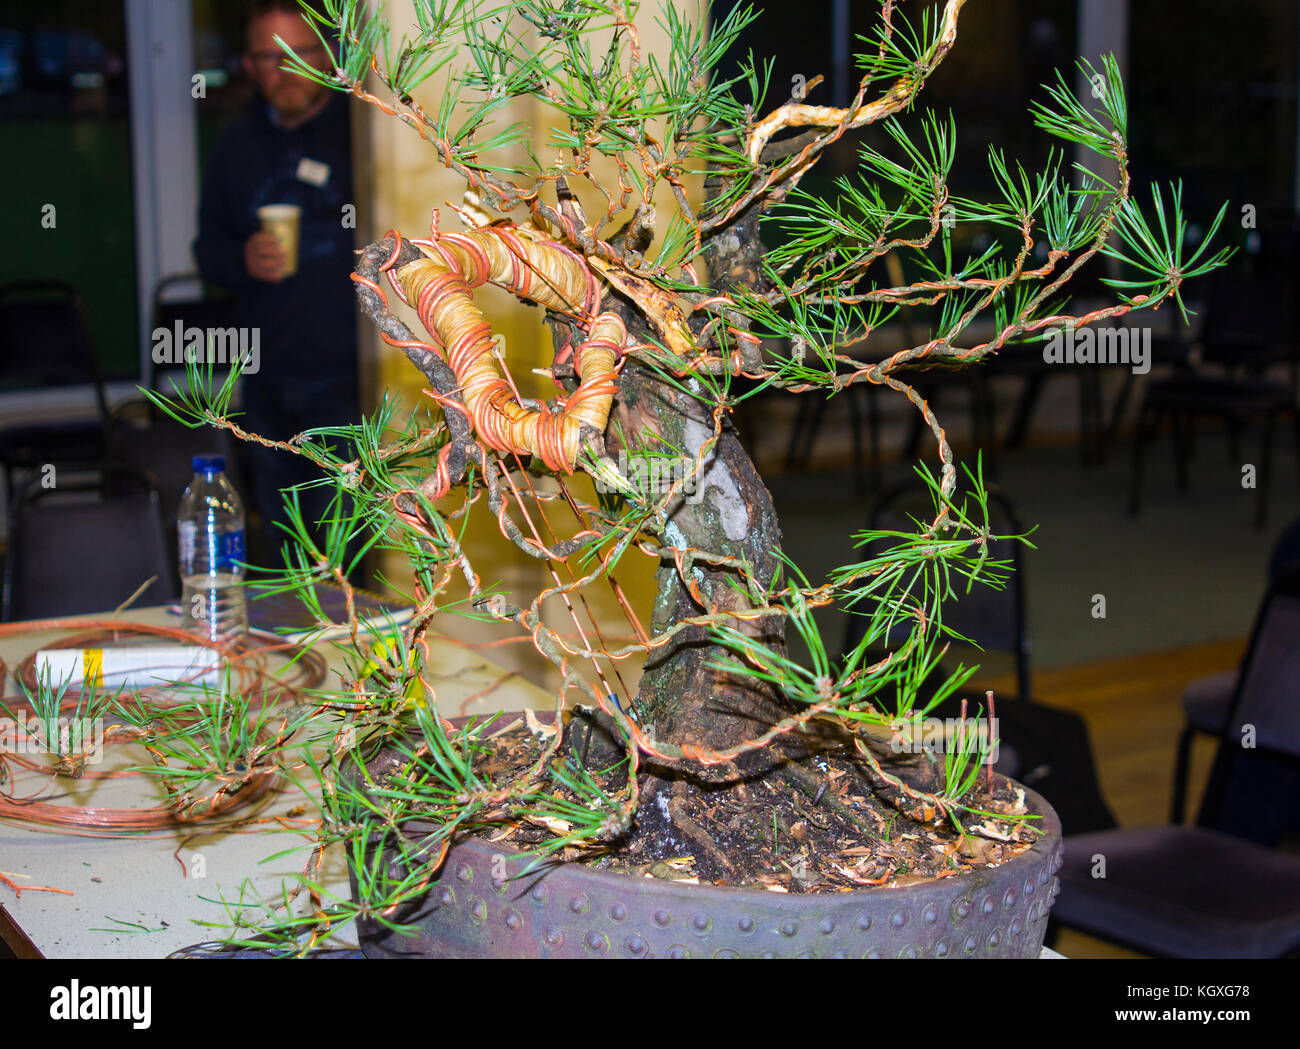 Rafia et le fil de cuivre utilisé dans la courbure des branches dans les premières étapes de la mise en forme et le développement d'un bonsaï à partir d'un arbre de pin sylvestre recueillie Banque D'Images